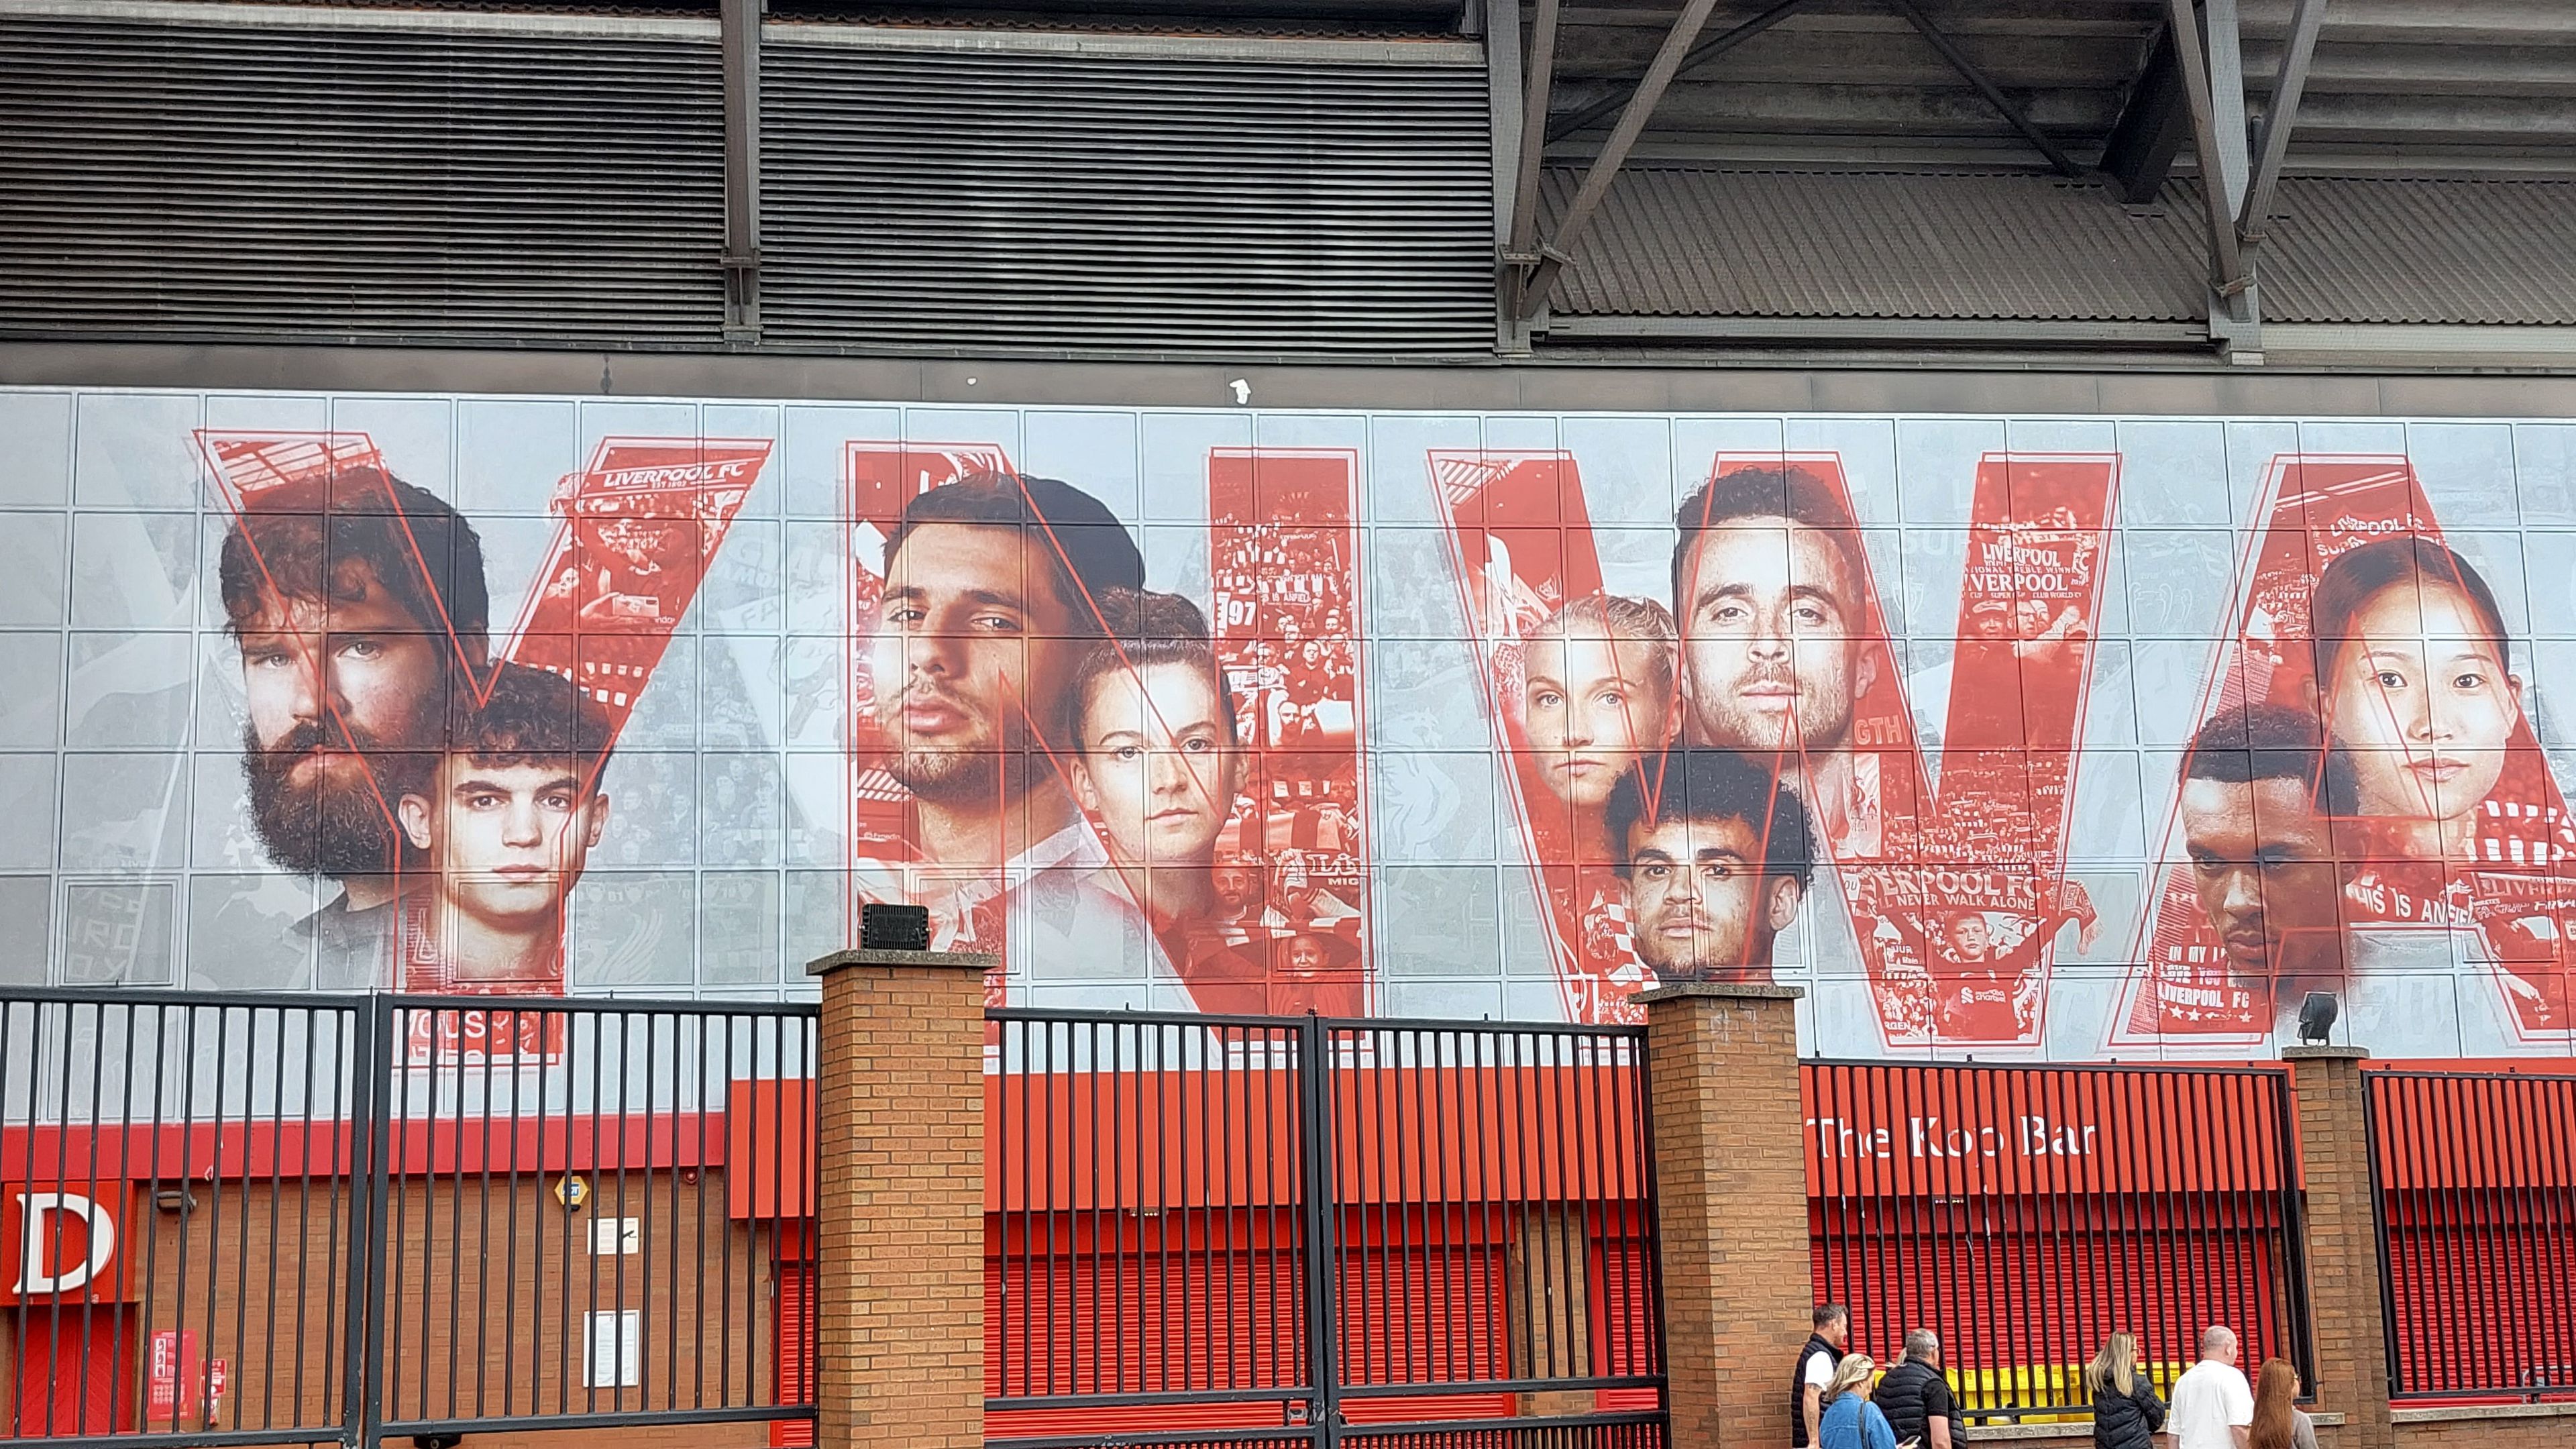 Az Anfield faláról már Szoboszlai néz a drukkerekre – helyszíni riport Liverpoolból